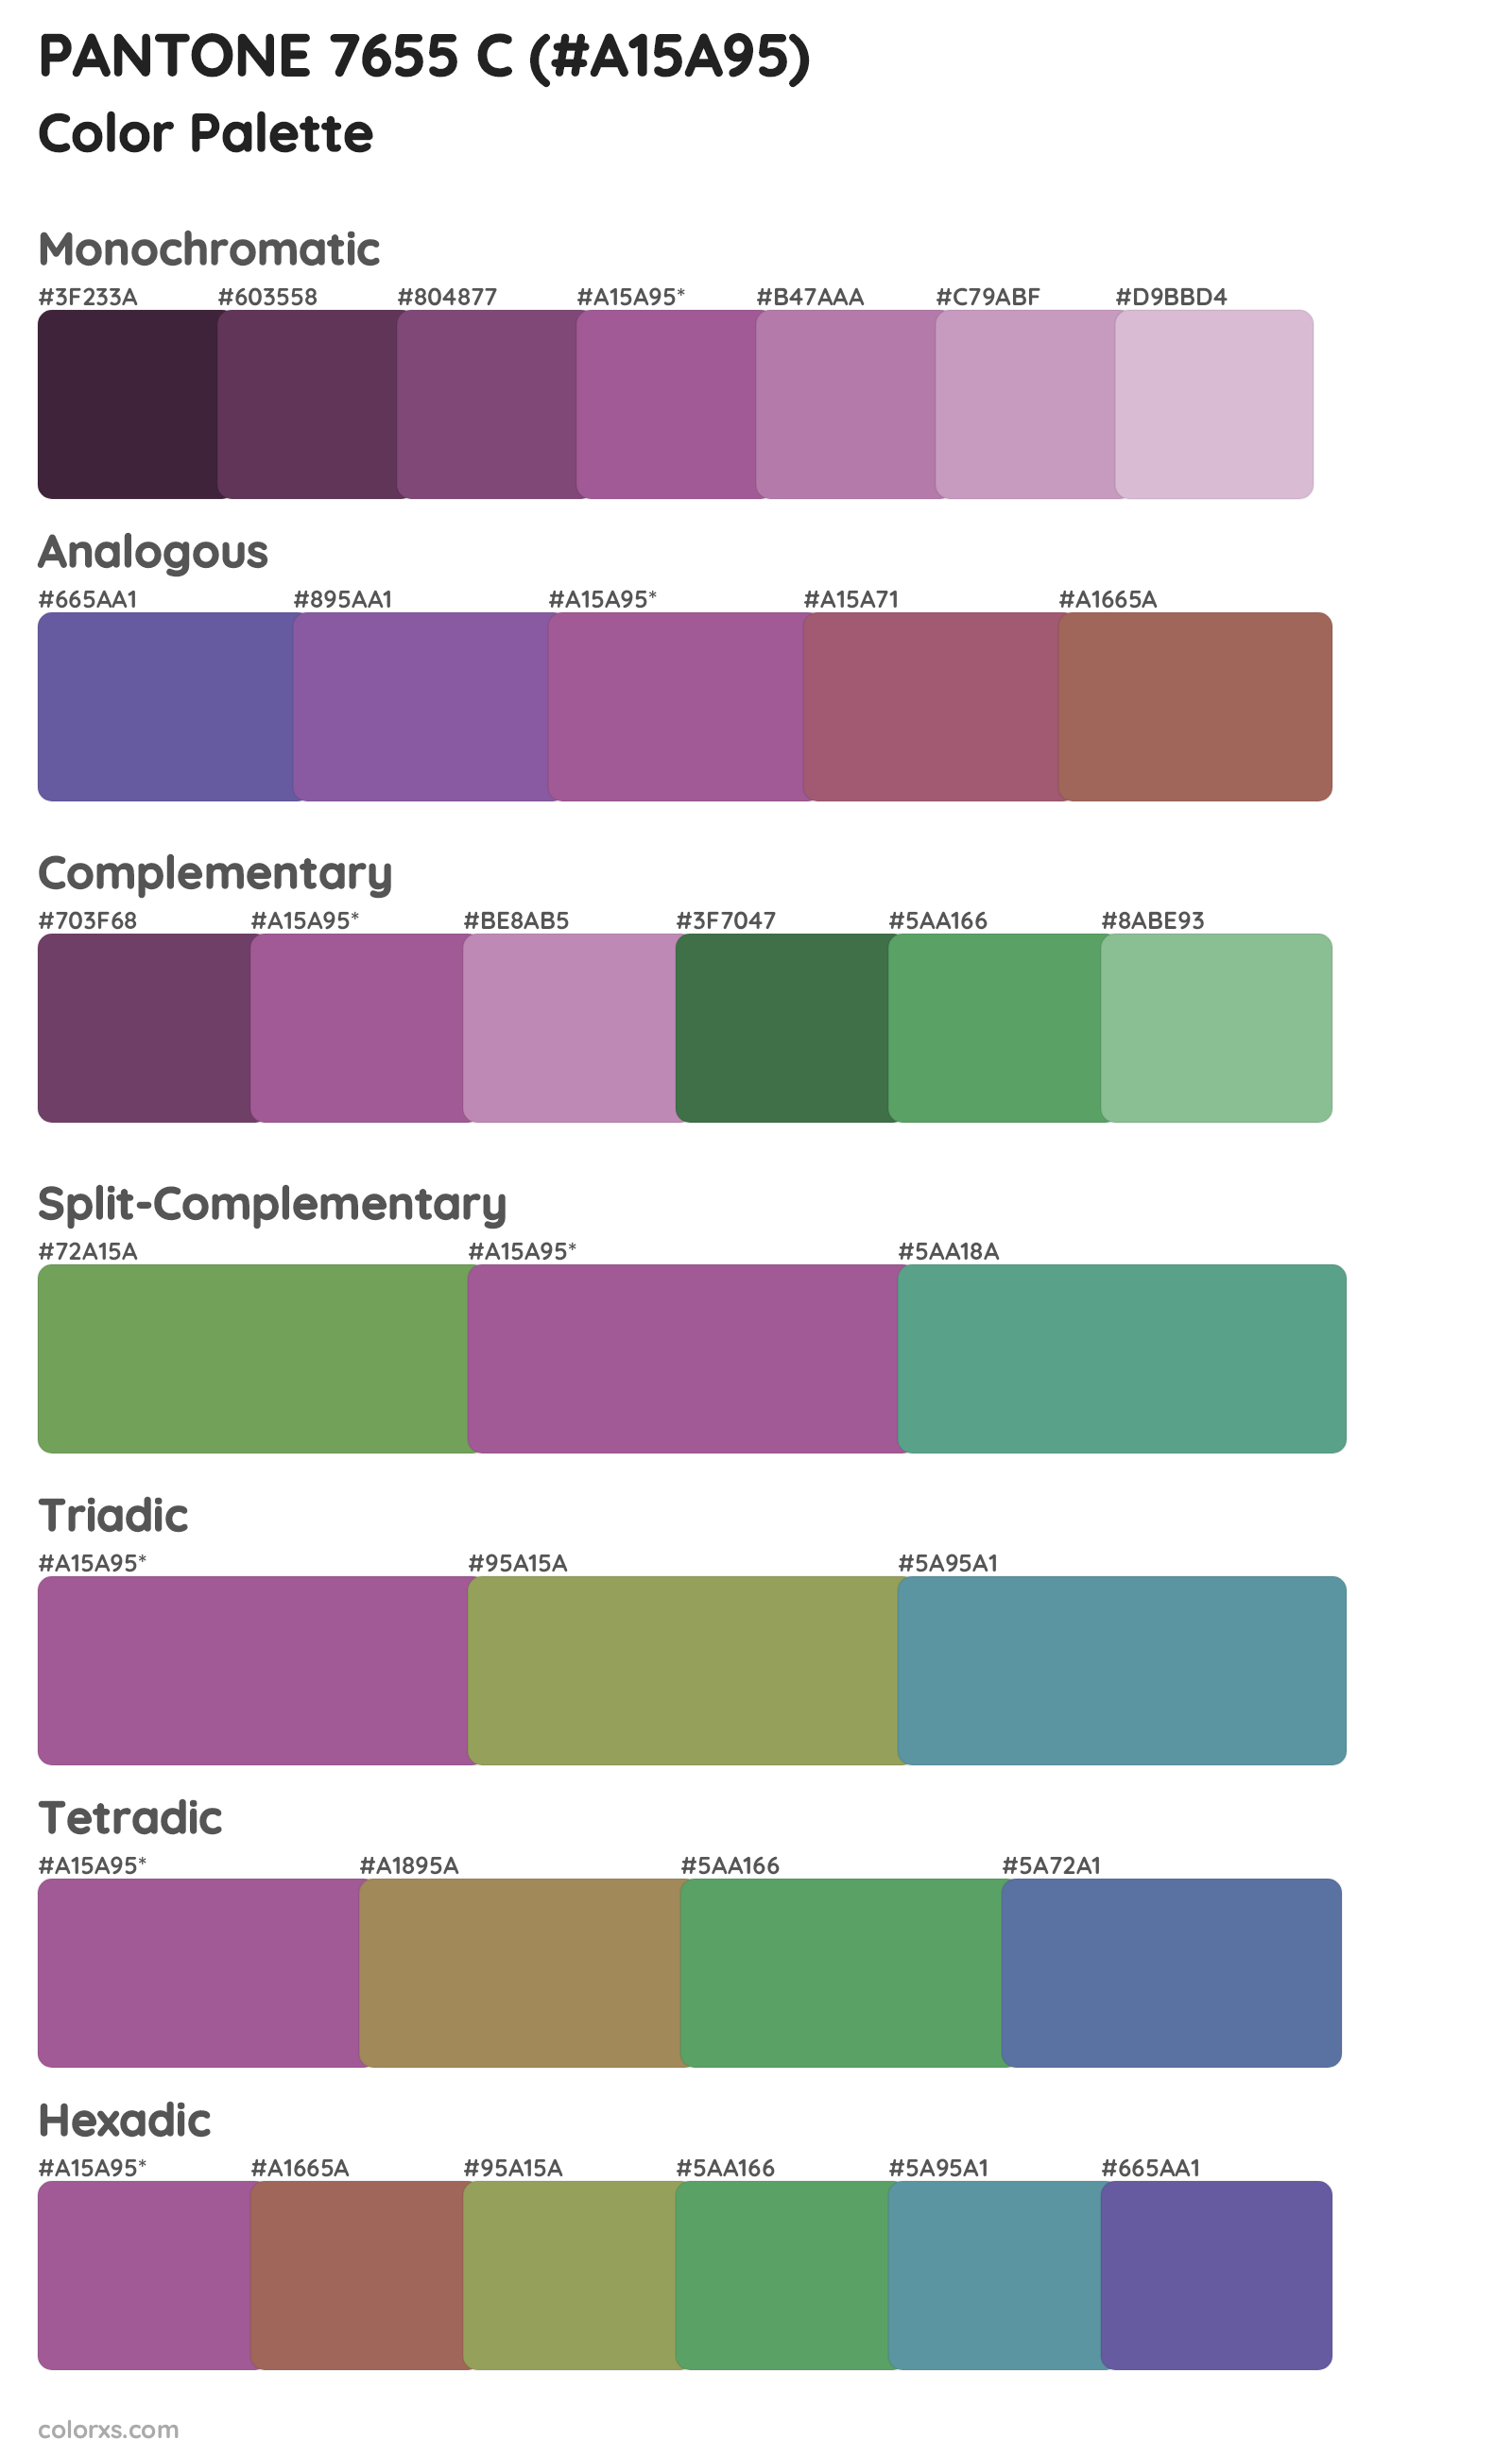 PANTONE 7655 C Color Scheme Palettes